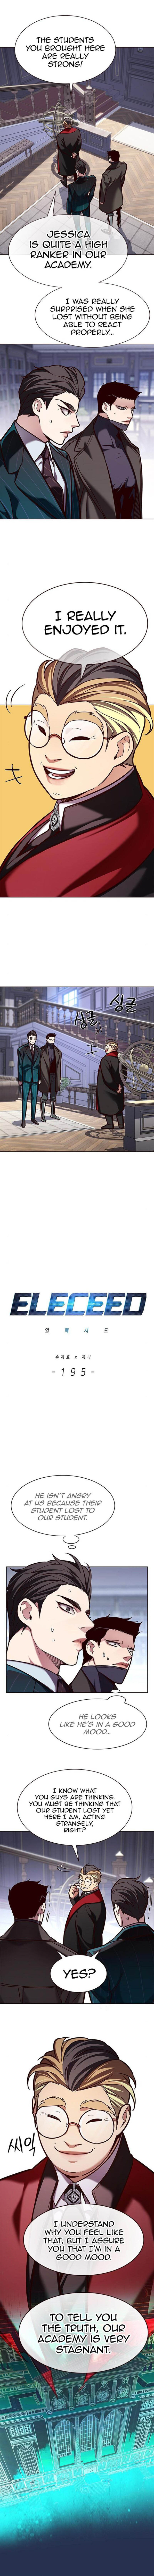 eleceed_195_1